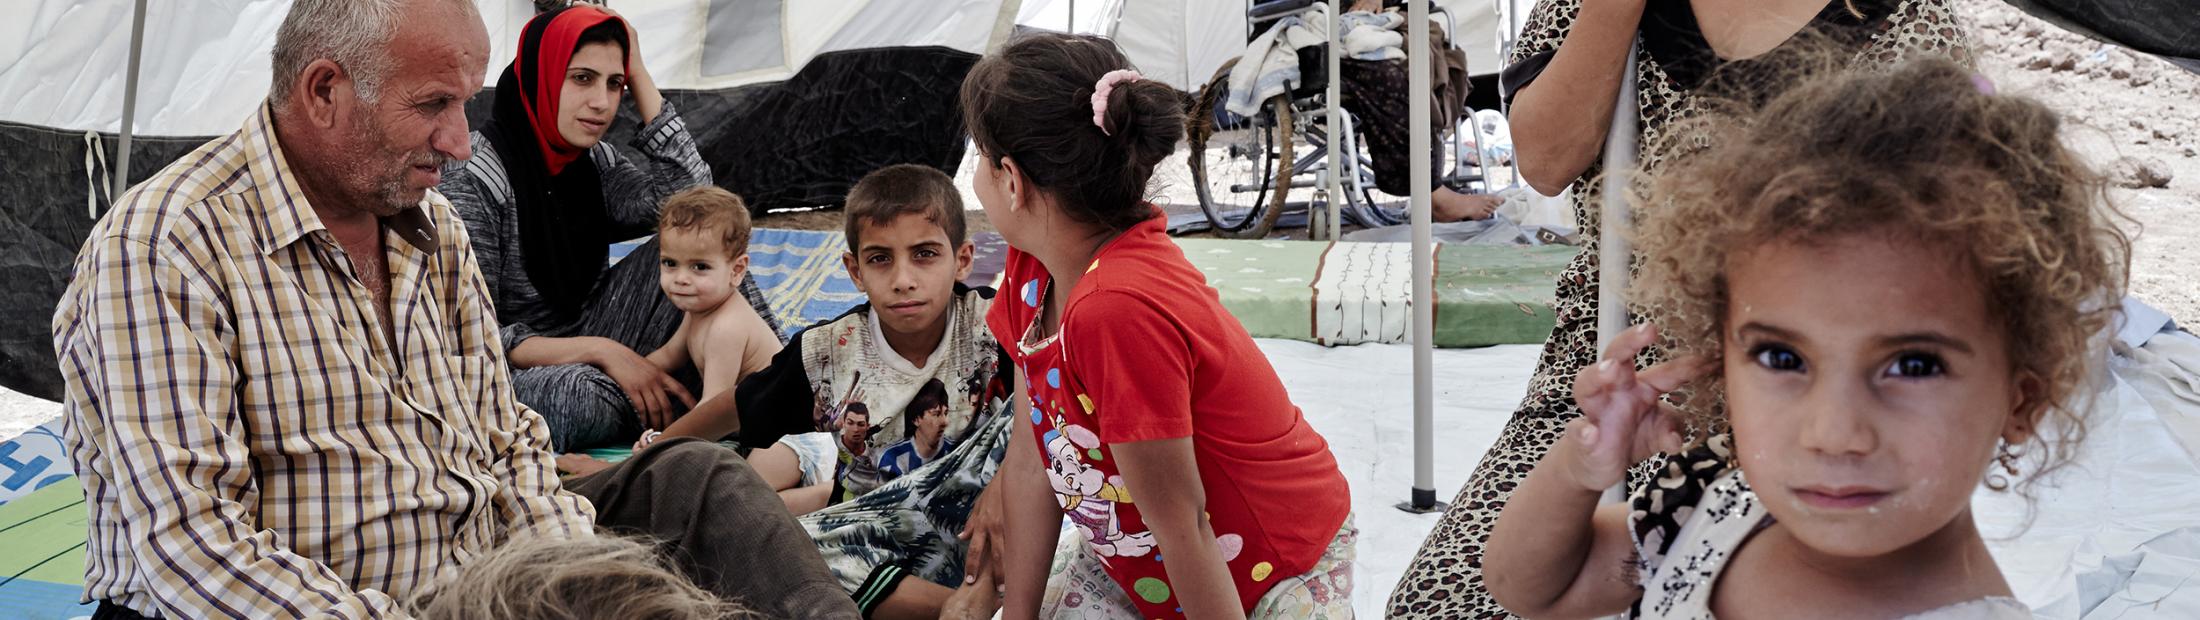 Miles de desplazados abandonan comunidades cristianas en Irak por la violencia